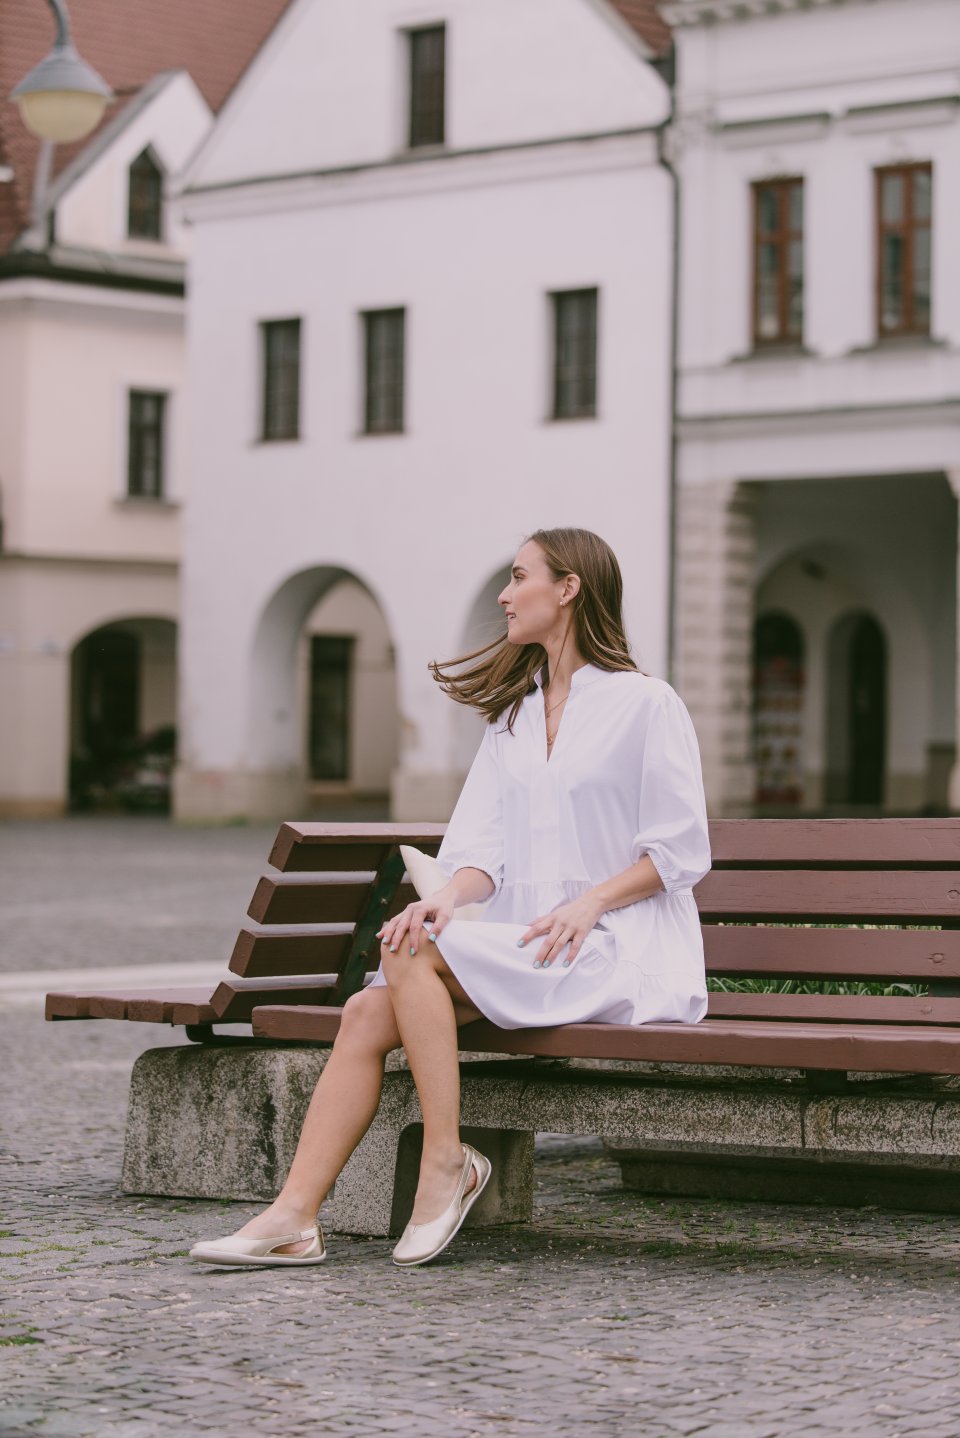 Damen Hemdblusenkleid Be Lenka Essentials - White